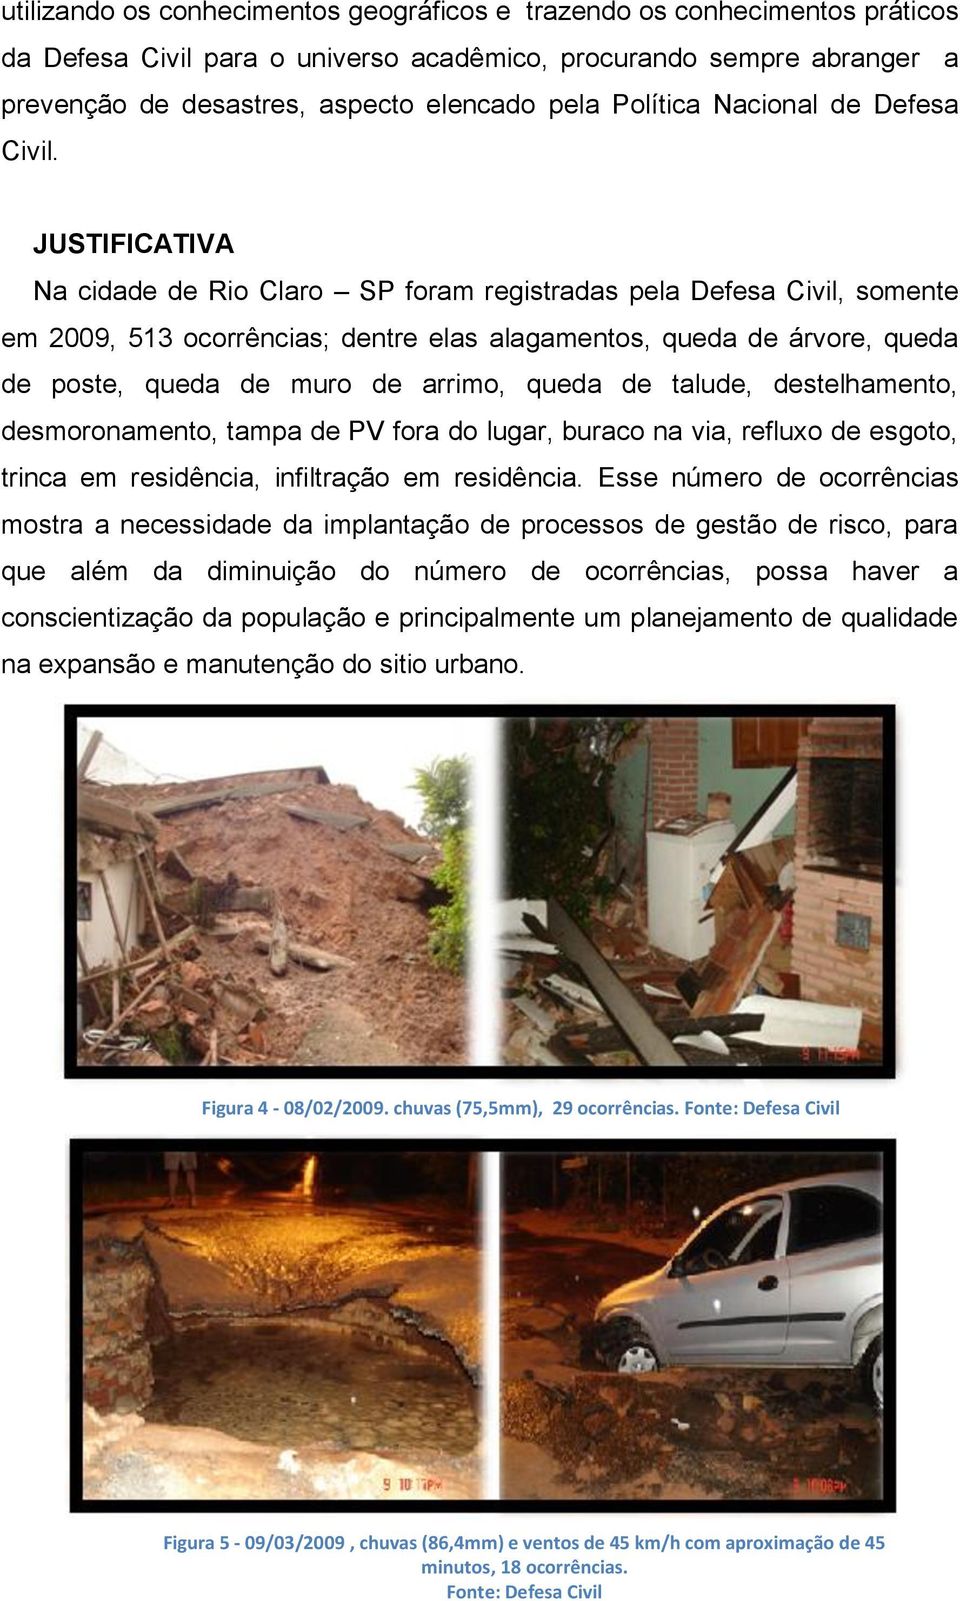 JUSTIFICATIVA Na cidade de Rio Claro SP foram registradas pela Defesa Civil, somente em 2009, 513 ocorrências; dentre elas alagamentos, queda de árvore, queda de poste, queda de muro de arrimo, queda